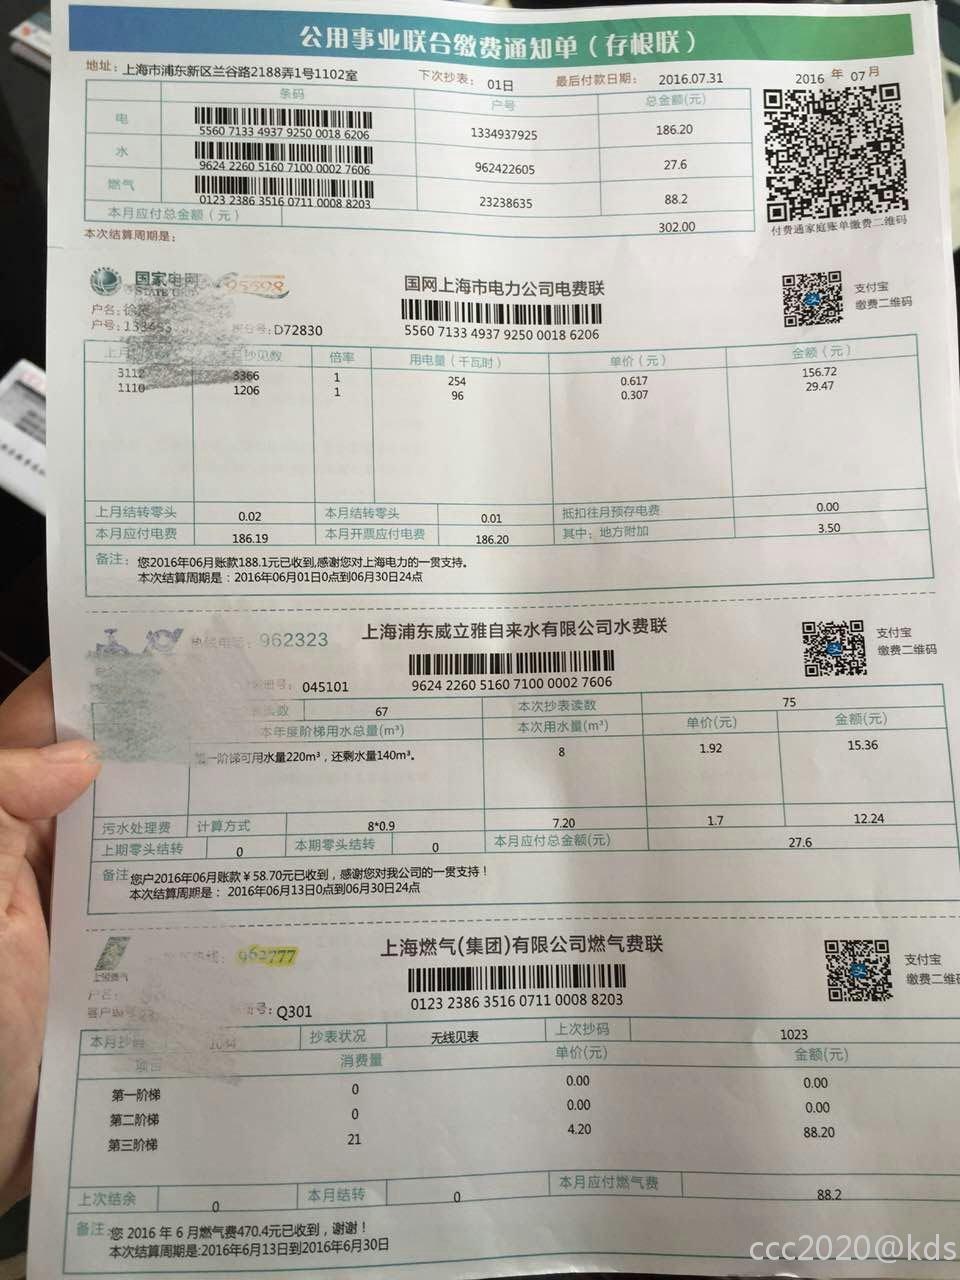 请问大家上海现在还在使用这样的水电煤账单吗?